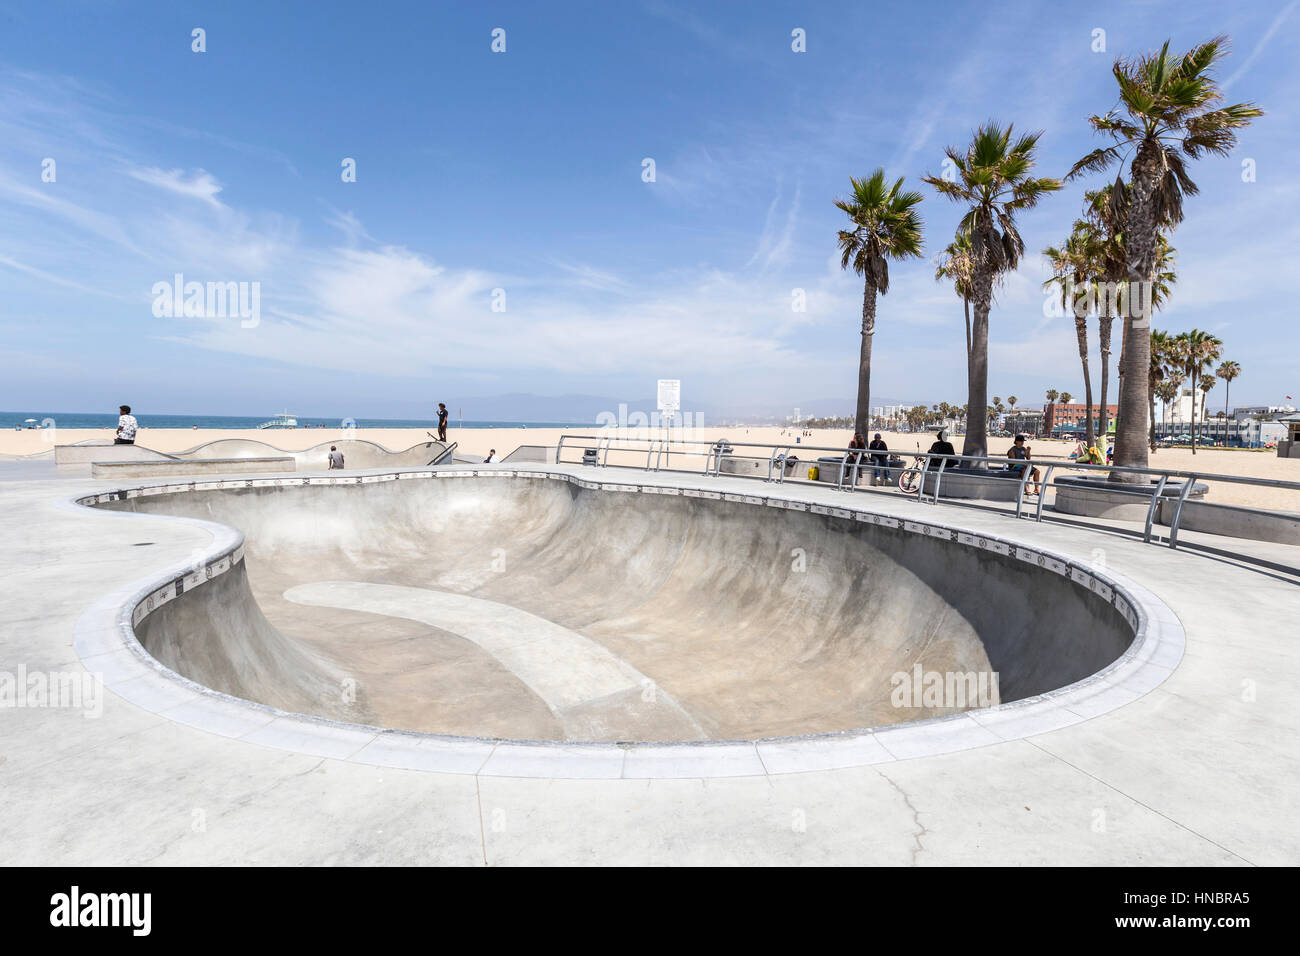 Voir l'éditorial d'un bol en béton à Los Angeles's Ocean front Venice Beach skate board park. Banque D'Images